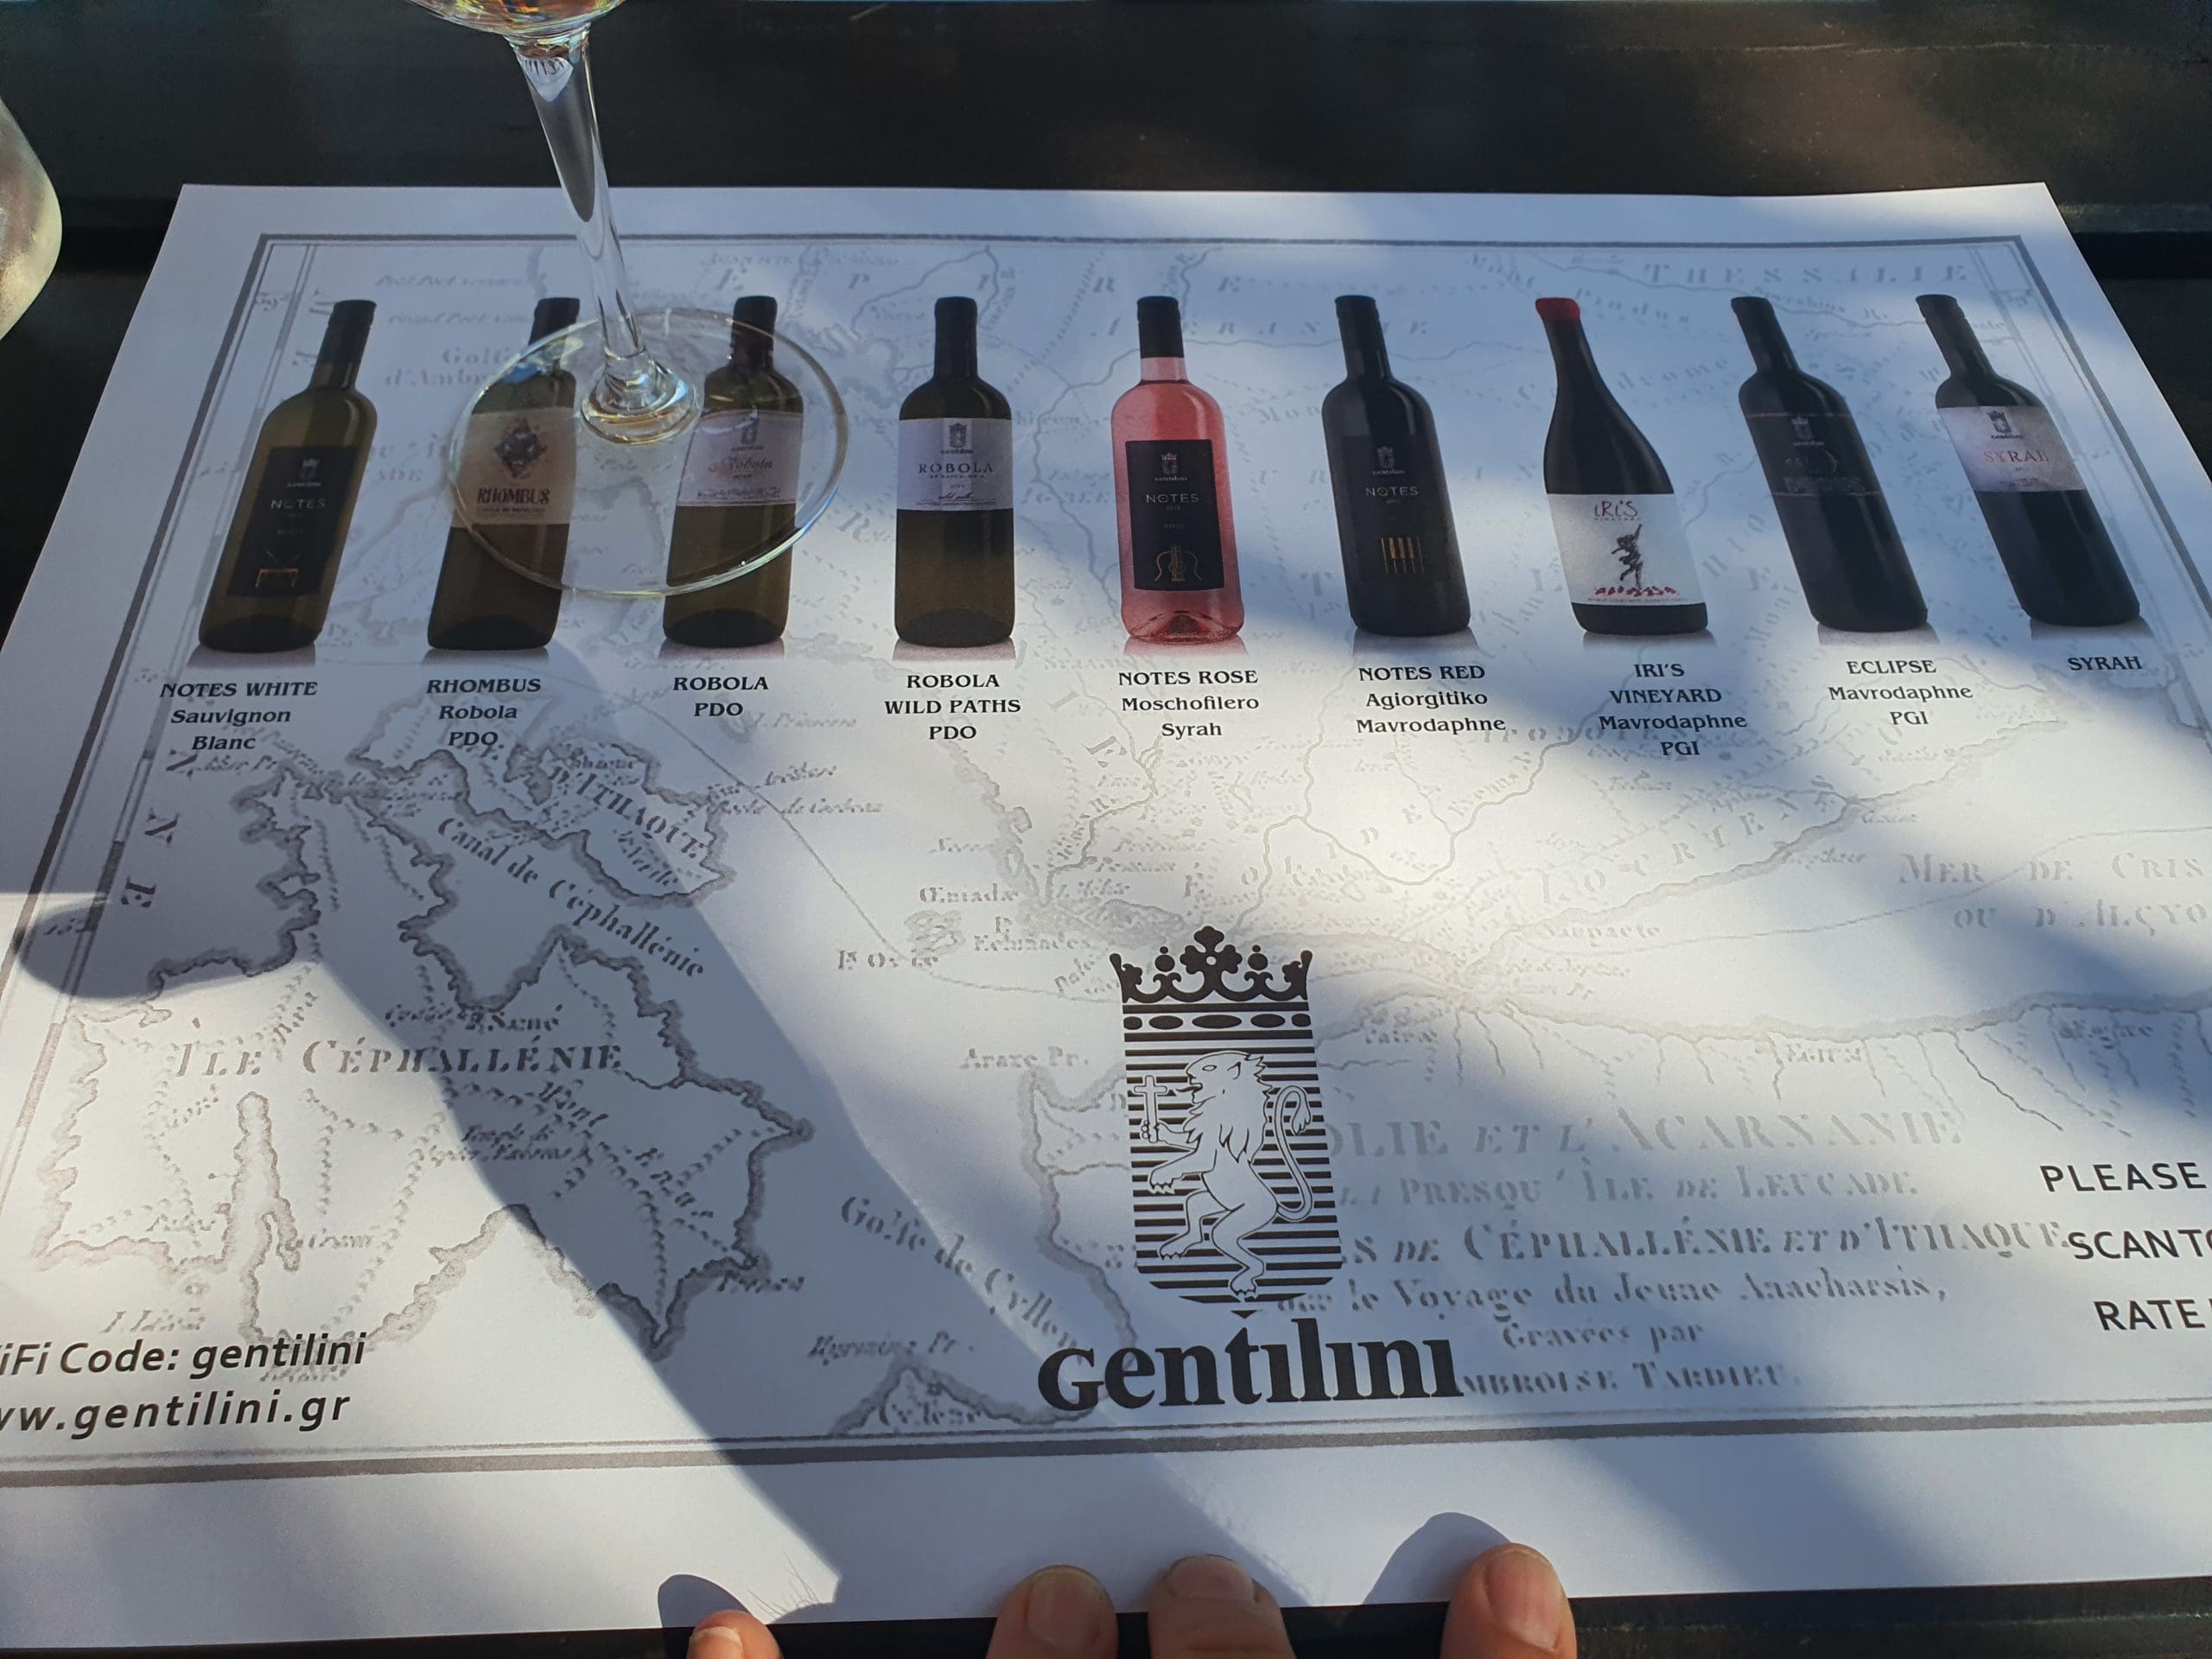 The Gentilini Winery tasting